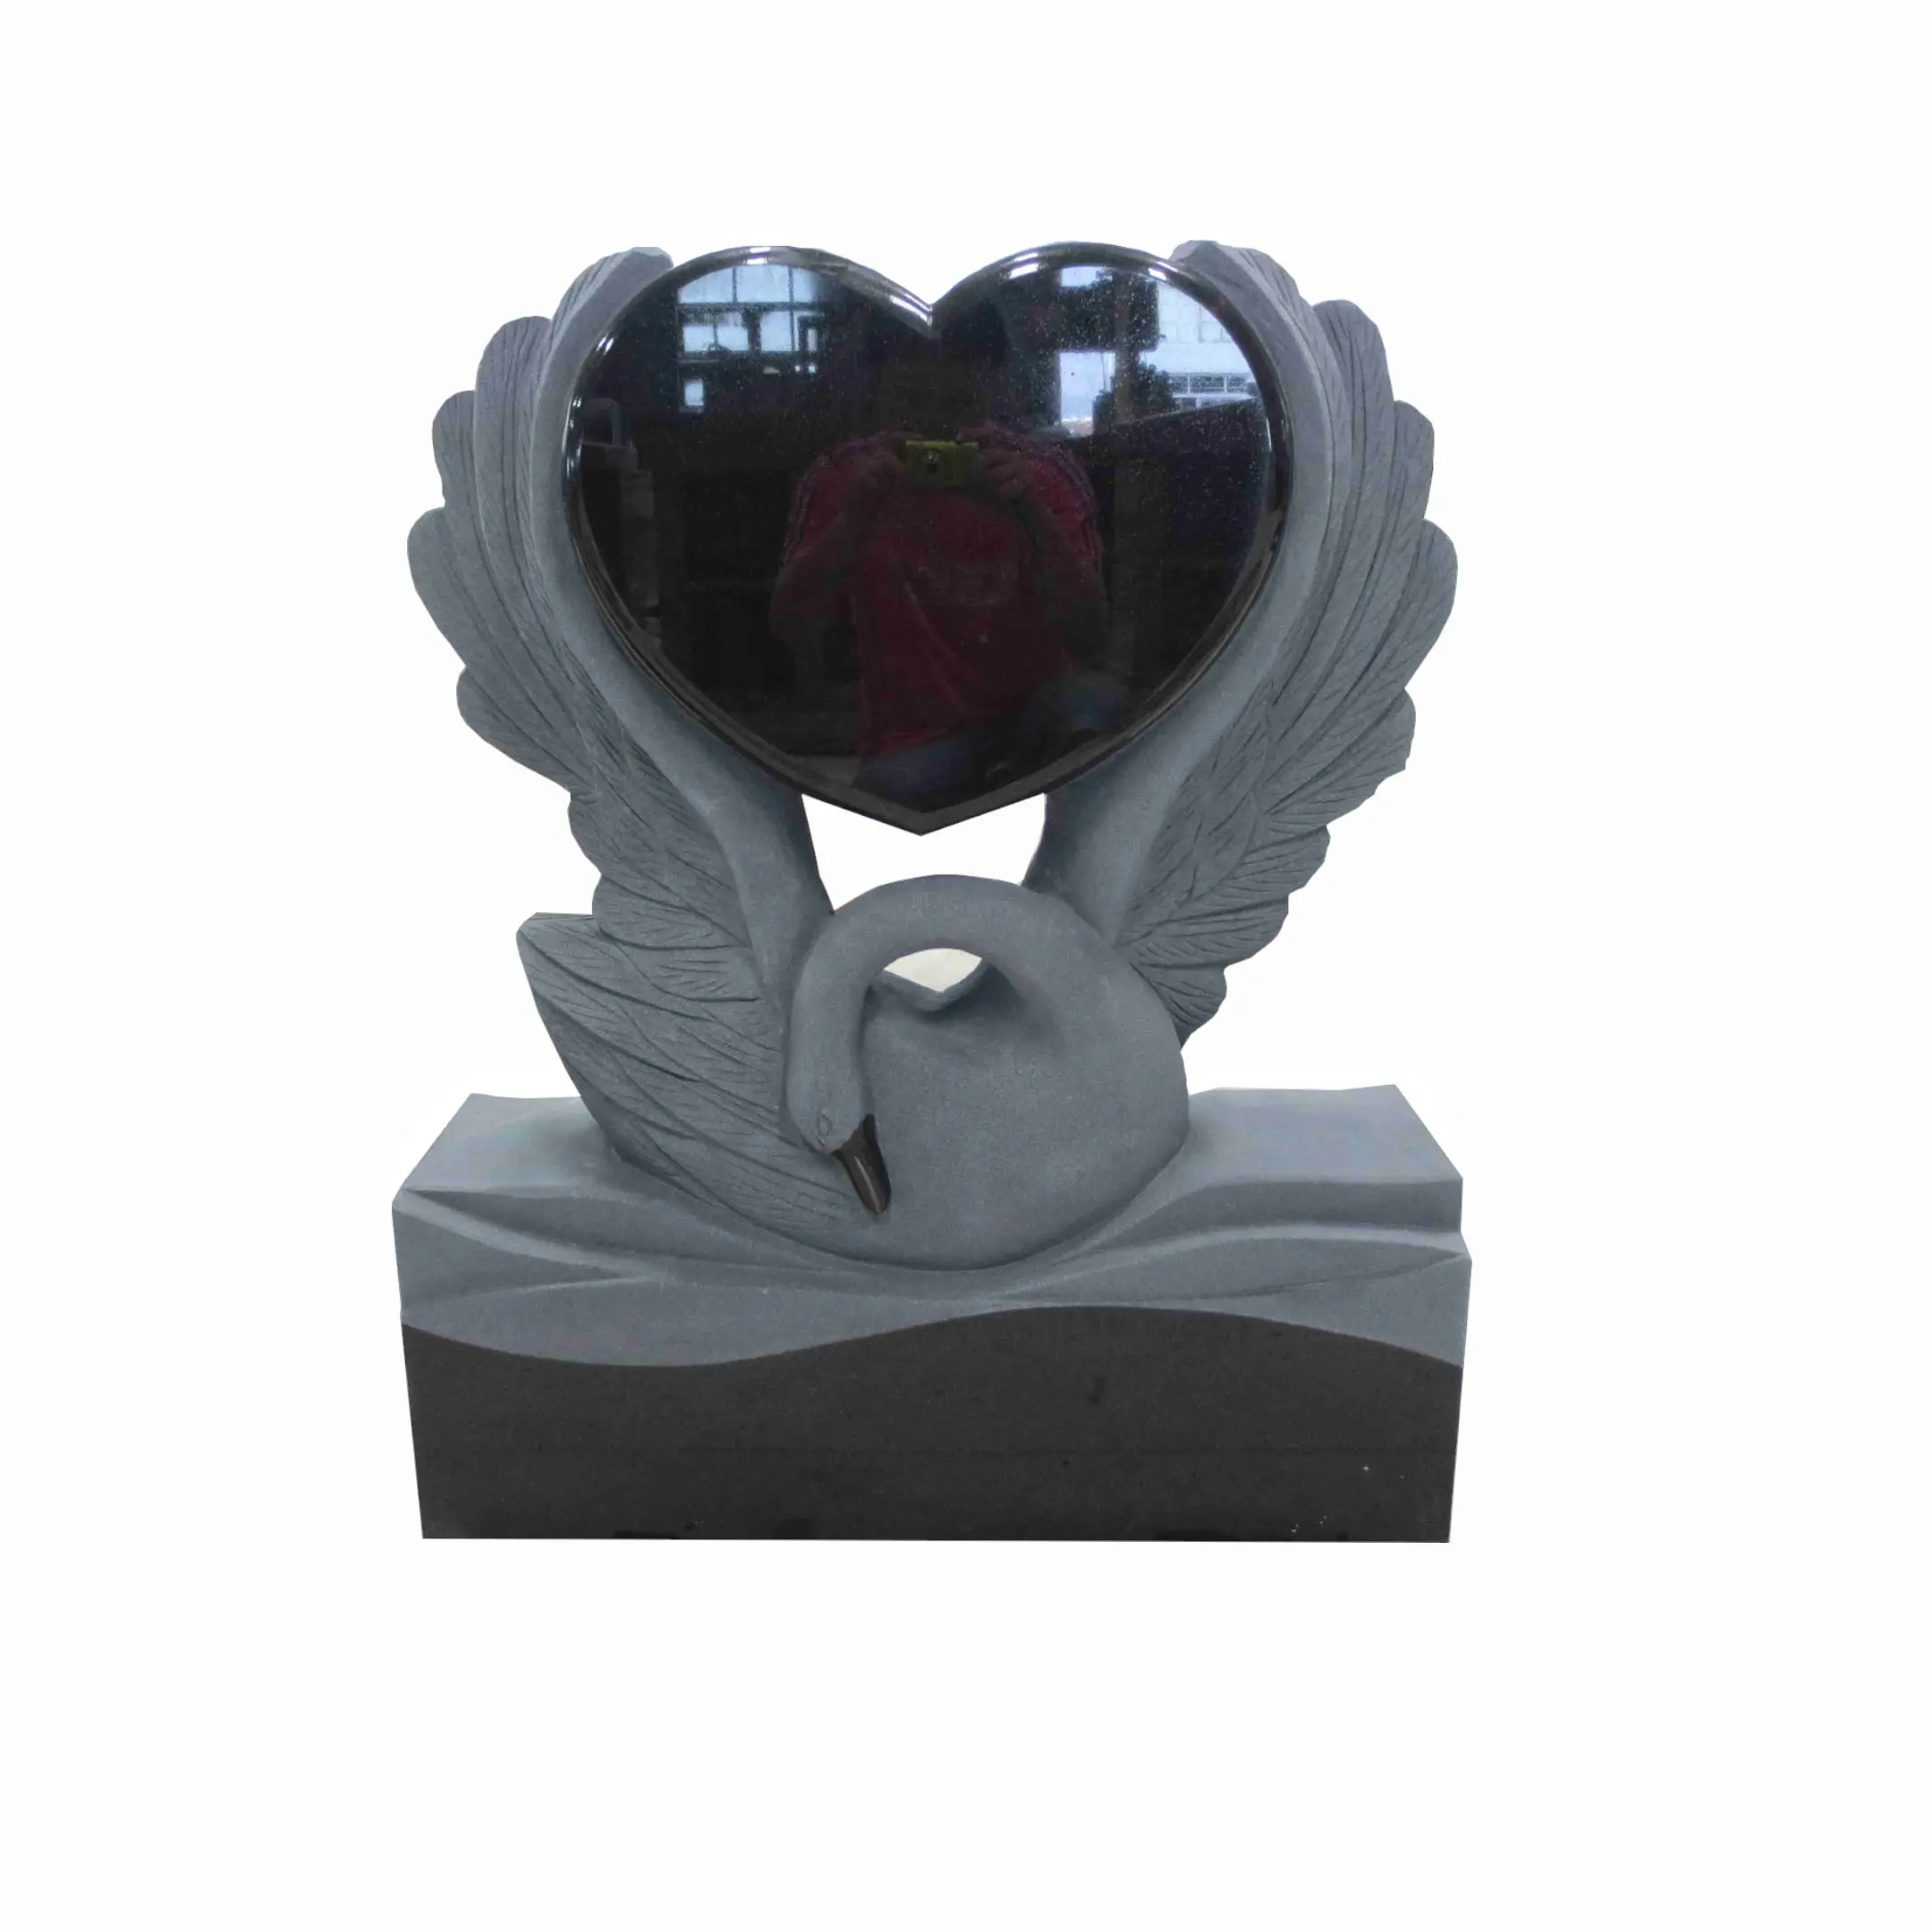 مصممة على شكل قلب بجعة من الجرانيت الأسود للاستخدام في المقبرة شواهد تذكارية